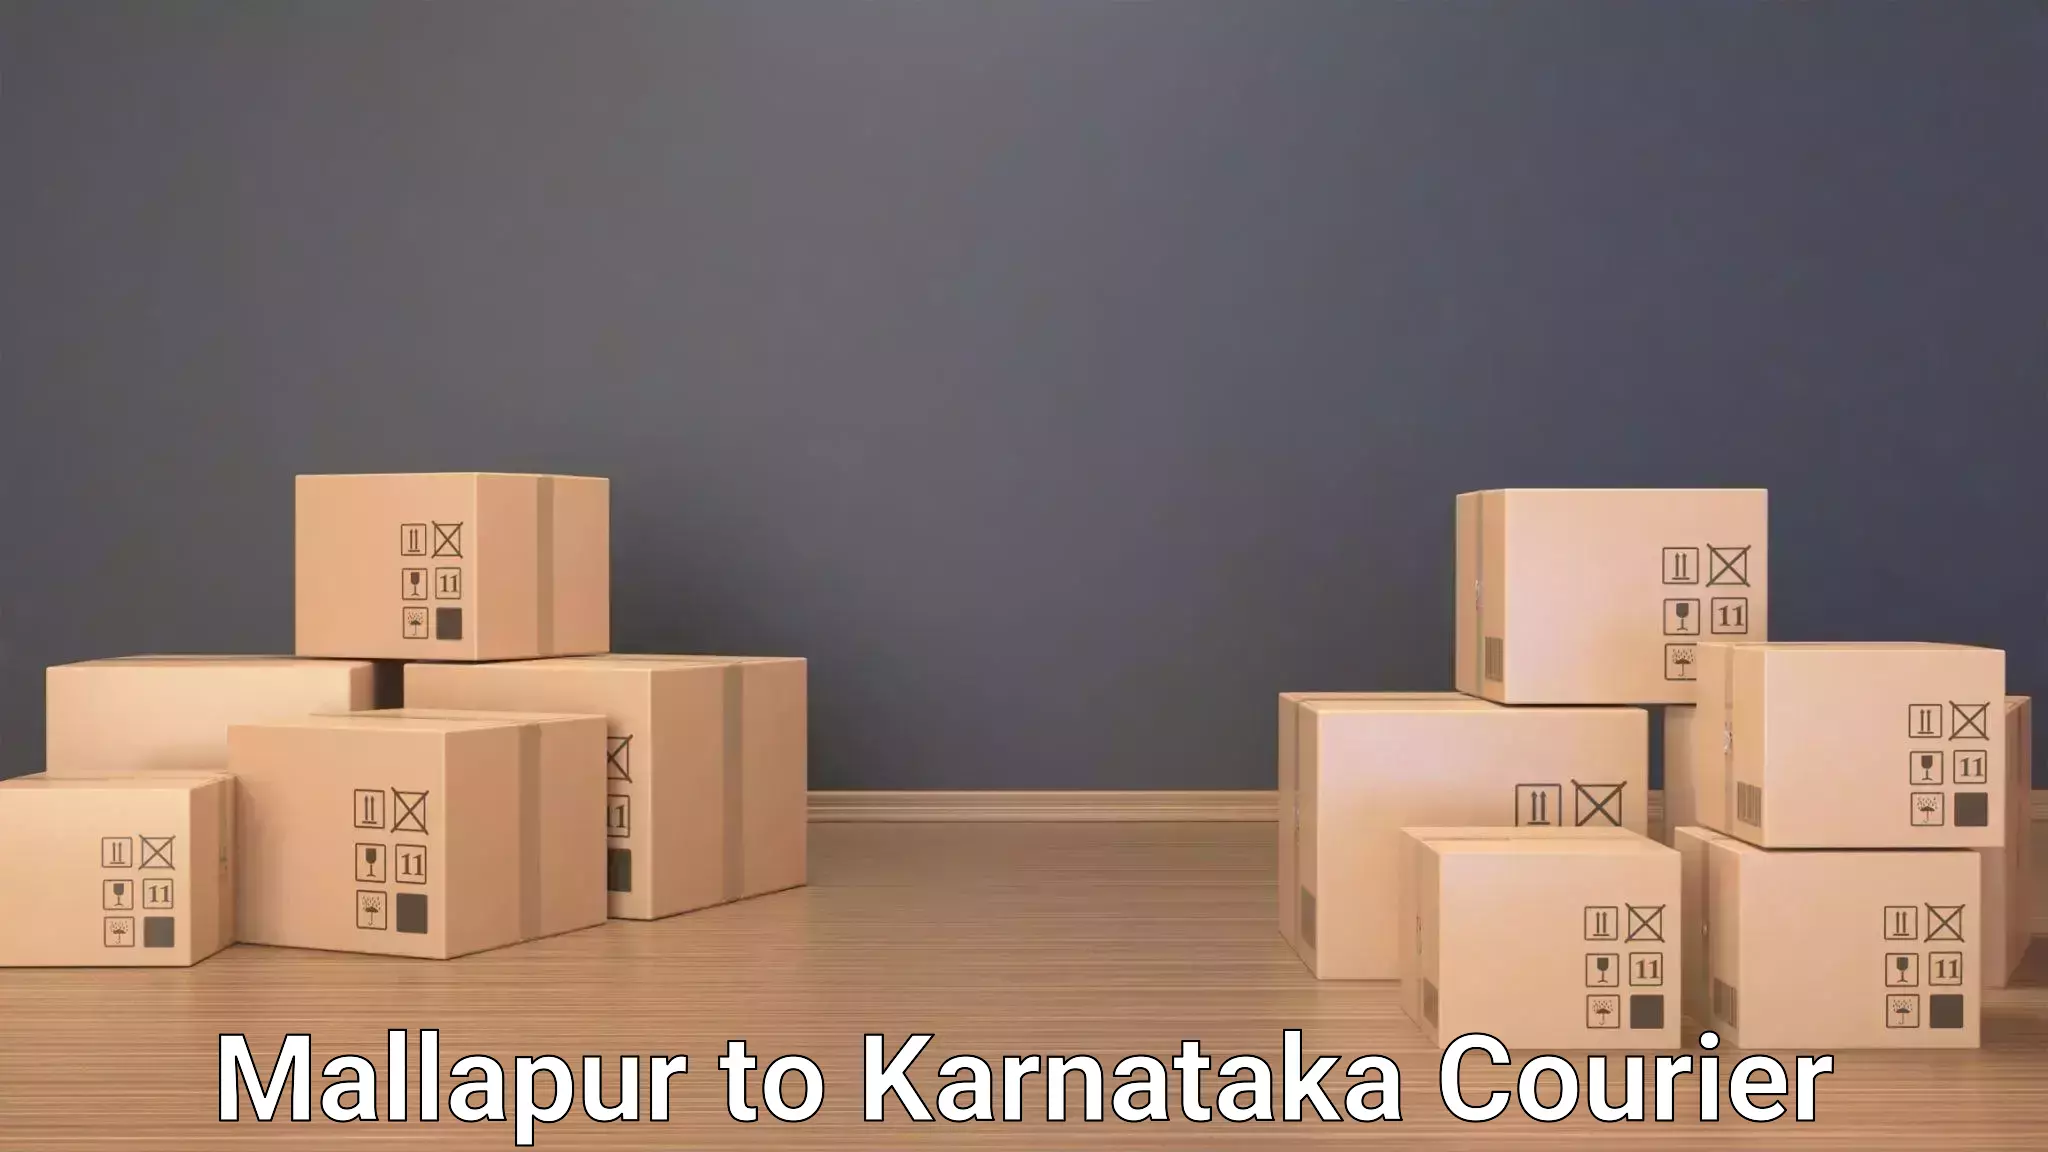 Baggage transport updates Mallapur to Karnataka